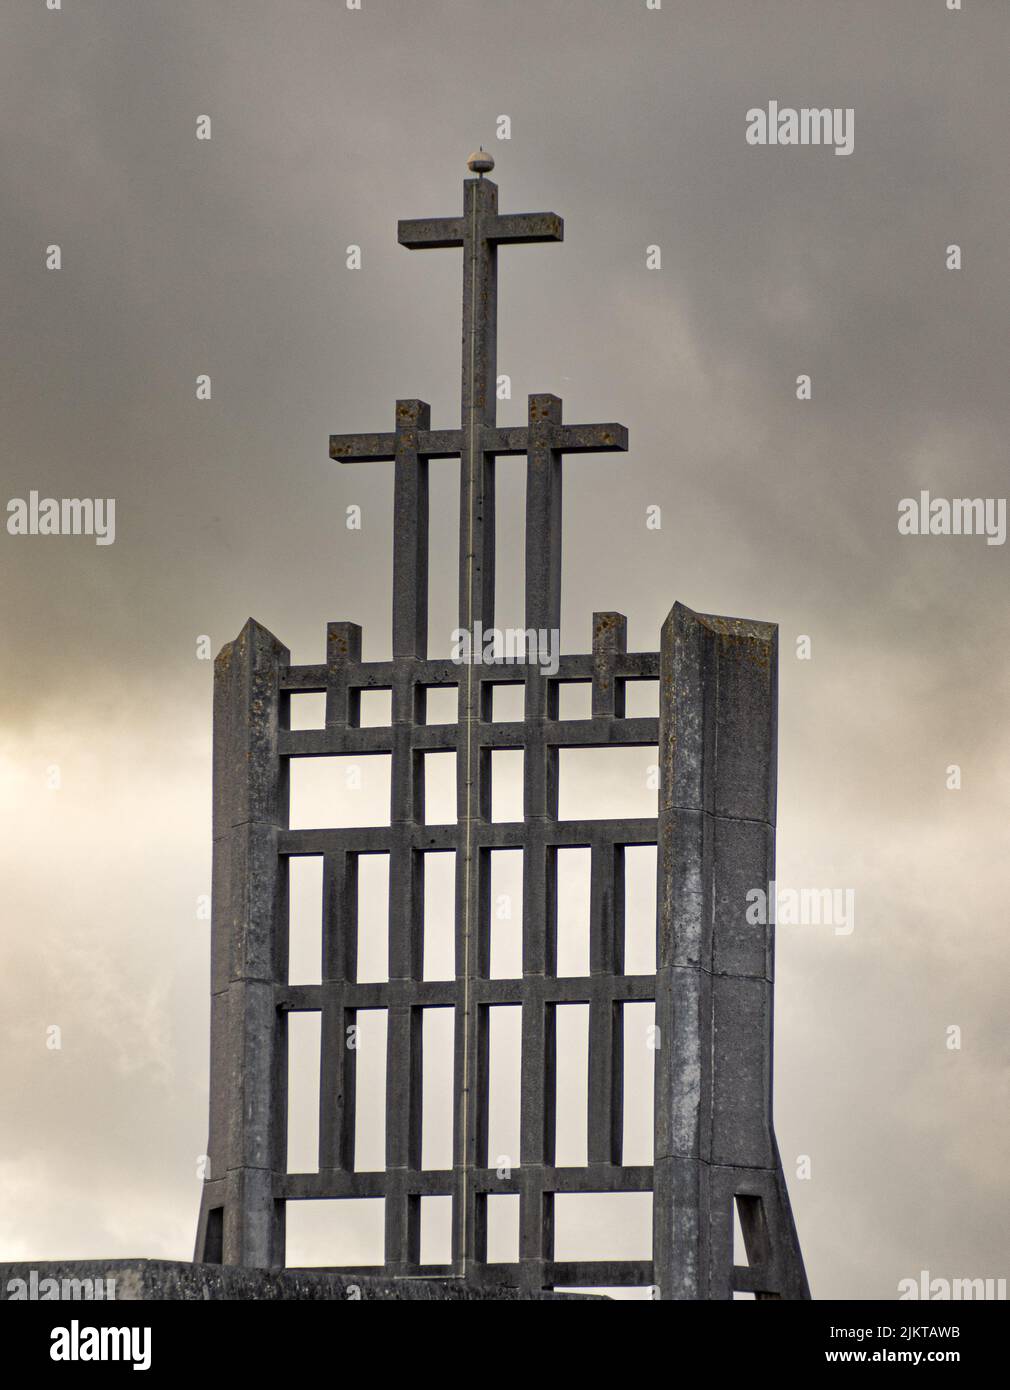 Eine Graustufenaufnahme einer Steinkonstruktion mit Kreuzen Stockfoto